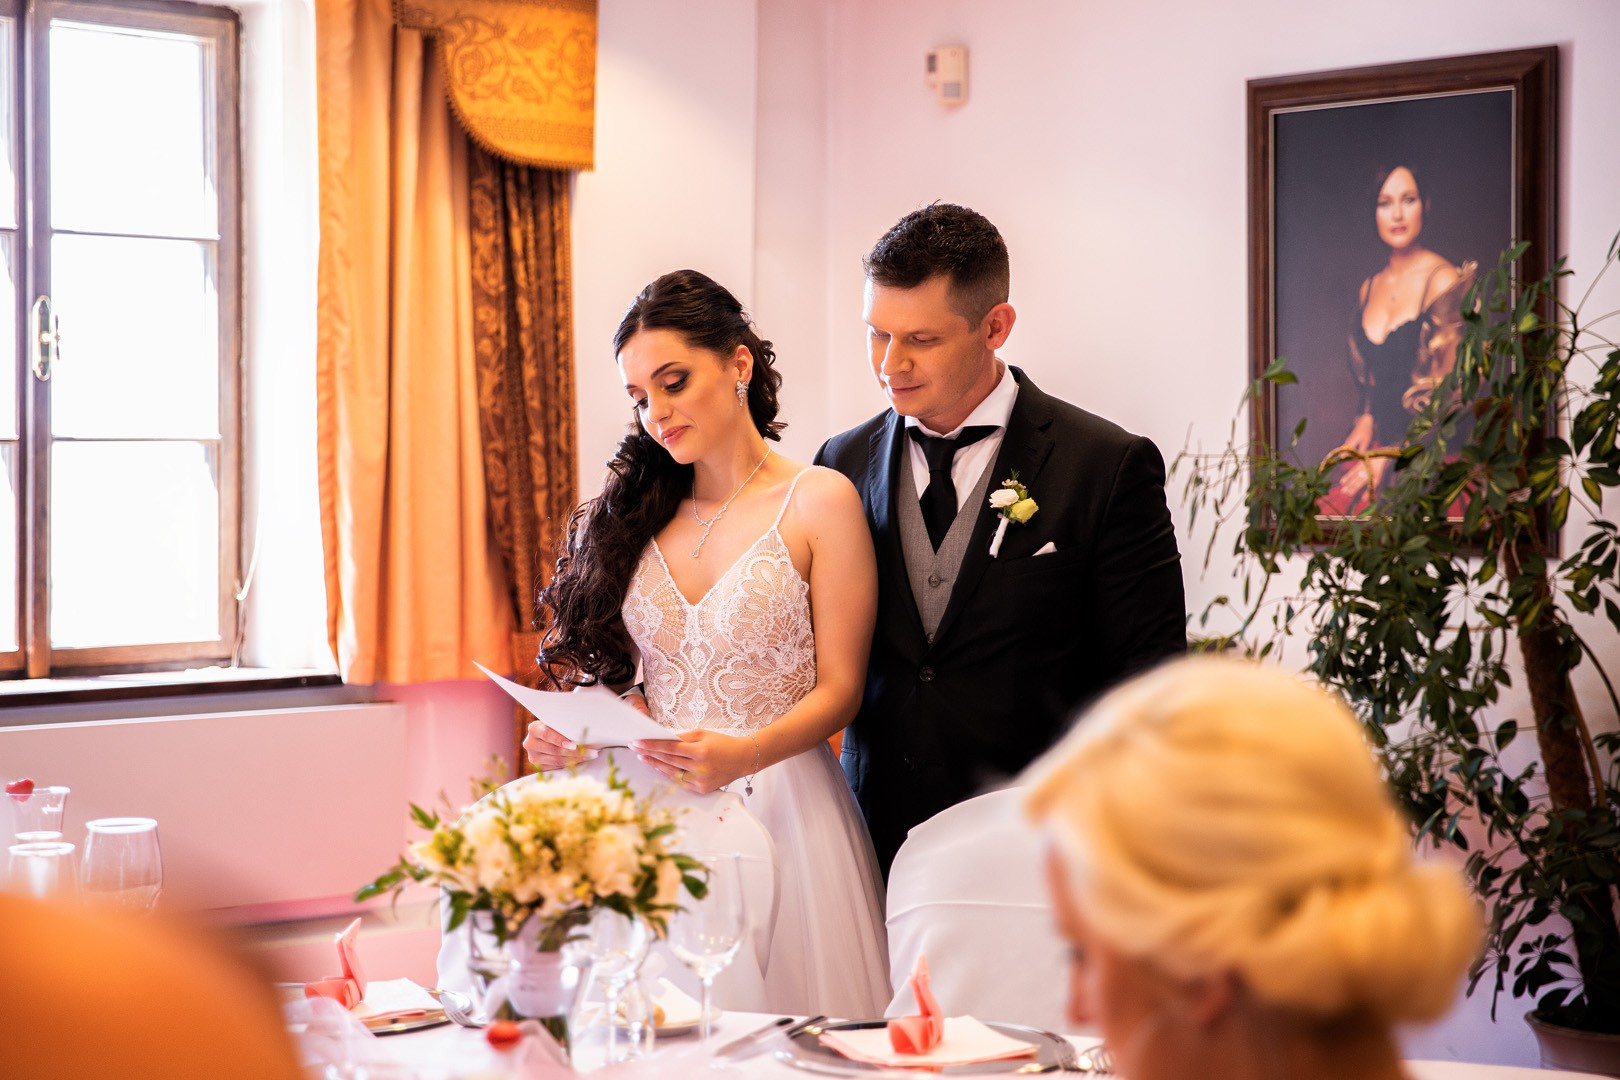 Picturesque dream wedding of Kloudy & Michal in Hluboká nad Vltavou. - 0266.jpg